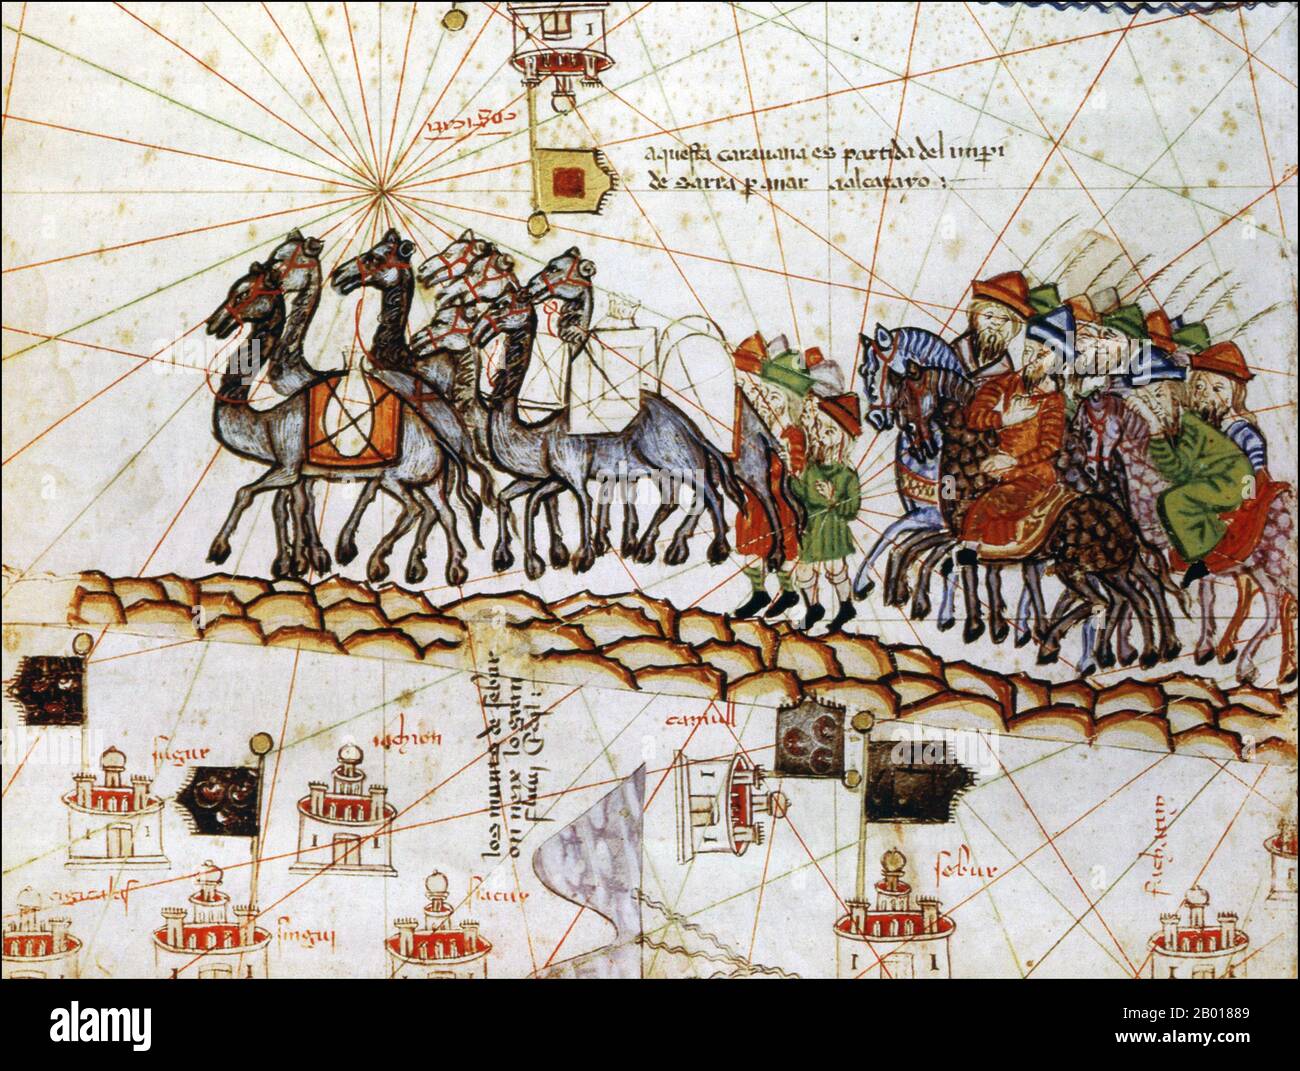 Espagne : une caravane sur la route de la soie, représentée dans l'Atlas catalan par Abraham Cresques (1325-1387), 1375. L'Atlas catalan (1375) est la carte catalane la plus importante de la période médiévale. Il a été produit par l'école de cartographie Majorcan et est attribué à Cresques Abraham, un illuminateur de livre juif qui a été auto-décrit comme étant un maître des cartes du monde ainsi que des boussoles. Il est dans la bibliothèque royale de France (aujourd'hui la Bibliothèque nationale de France) depuis la fin du siècle 14th. Banque D'Images